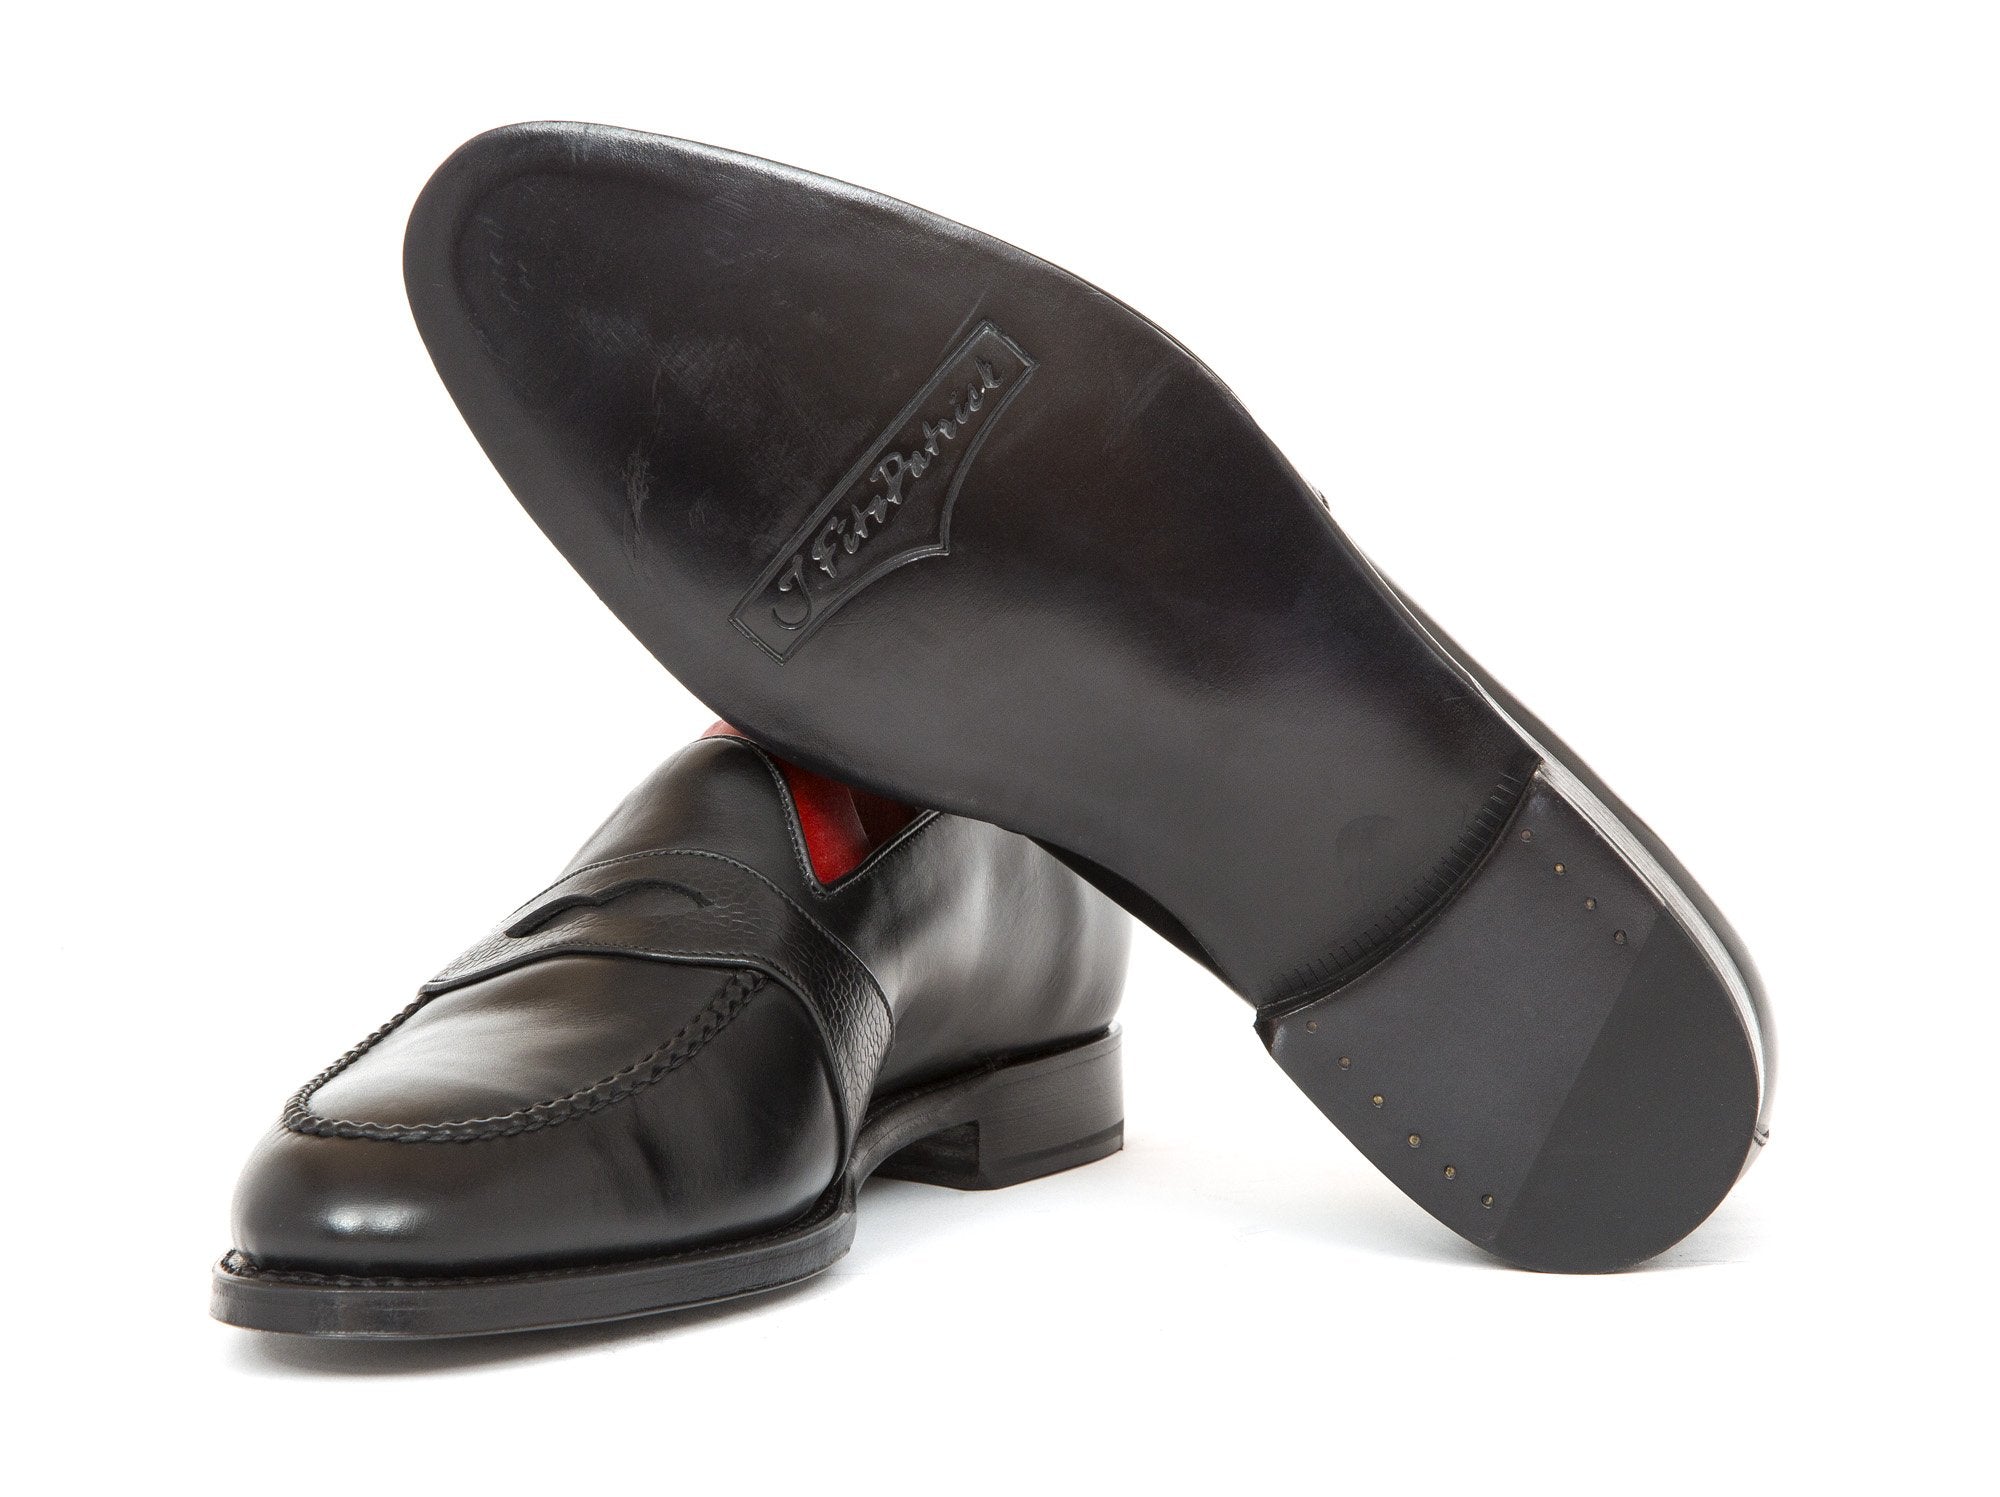 J.FitzPatrick Footwear - Madison - Black Calf / Black Soft Grain Strap - TMG Last